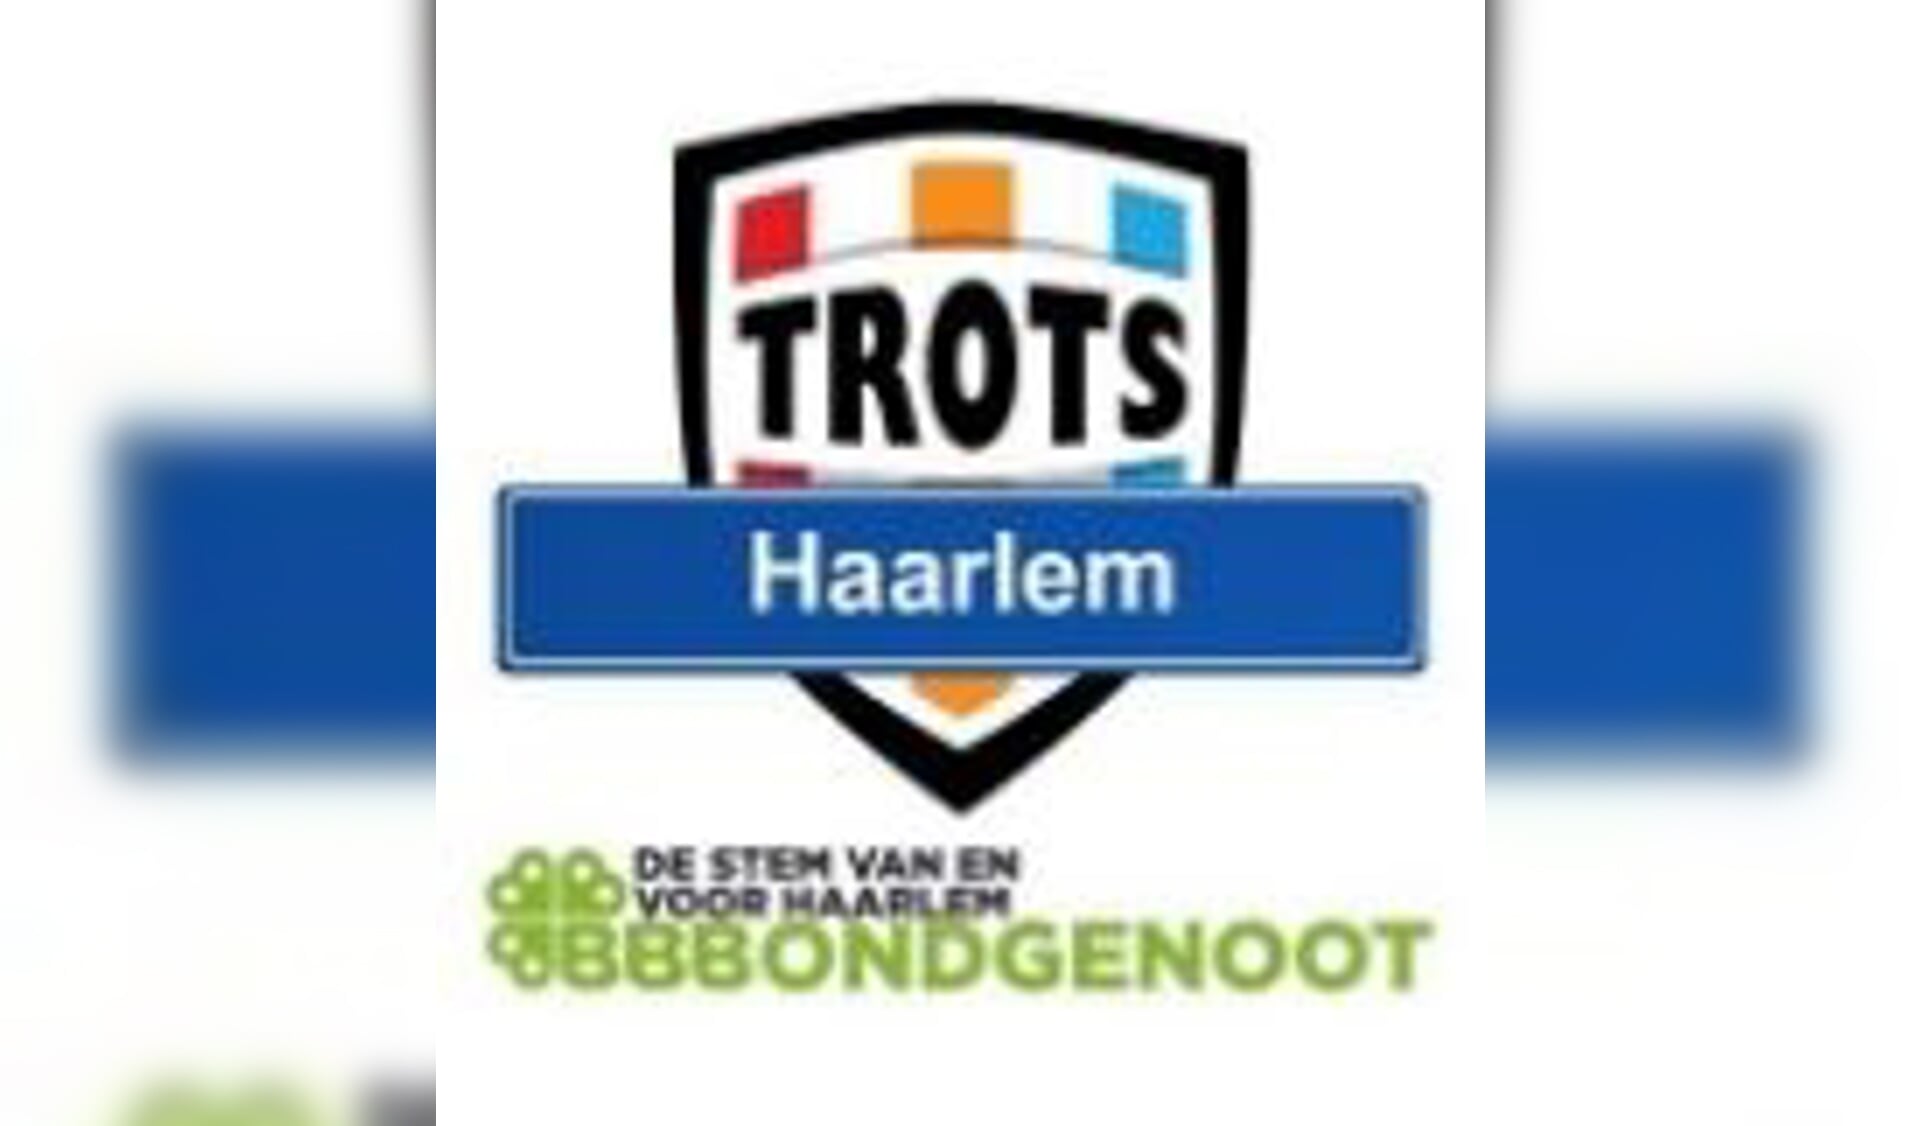 Fractie Trots Haarlem demonstratief afwezig bij vergaderingen wegens onenigheid over functie schaduwraadslid.